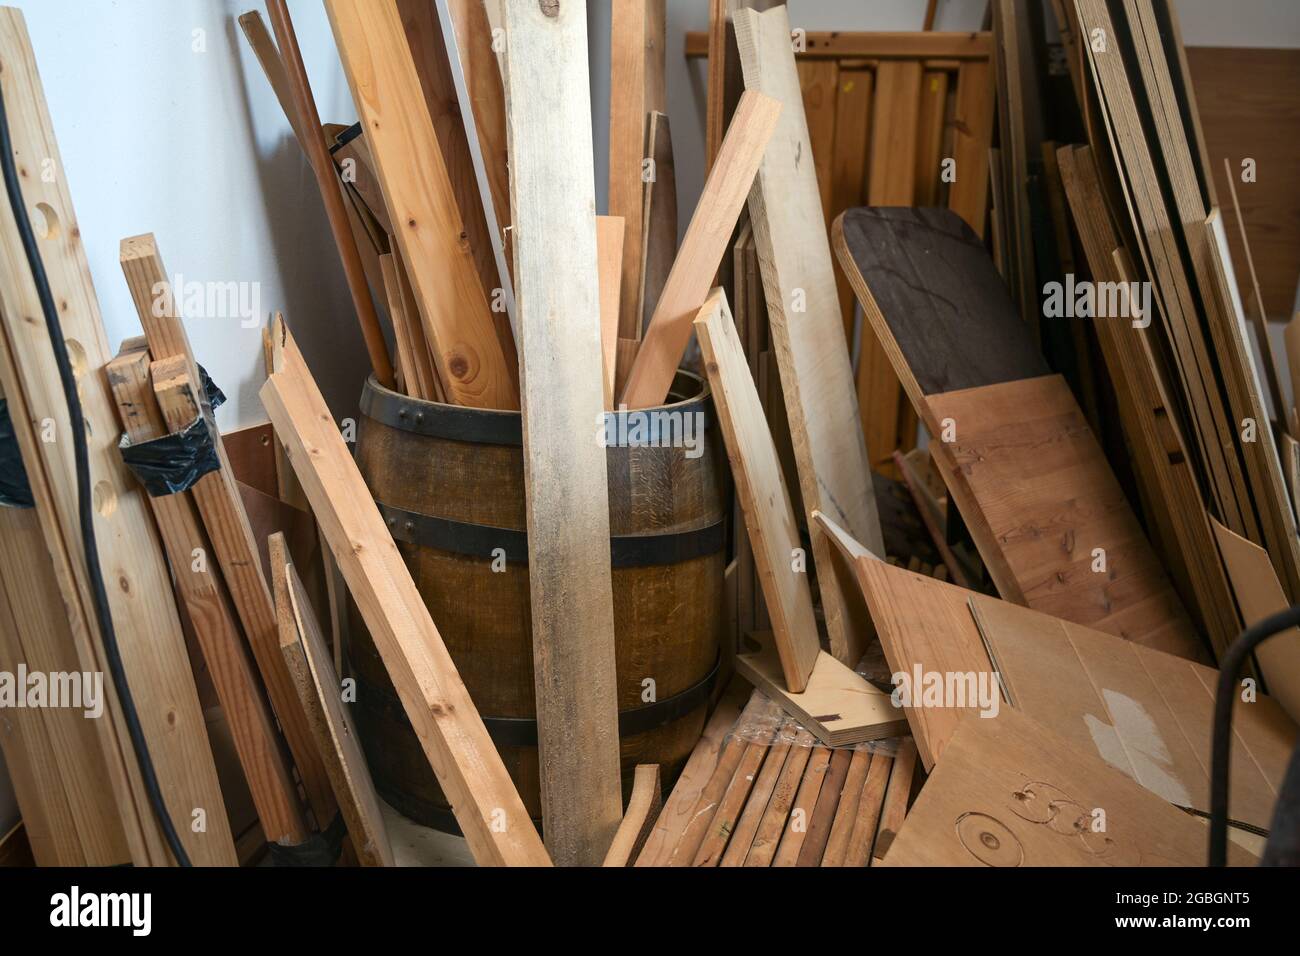 Stoccaggio di scarti di legno, listelli, listelli e tavole nell'officina di un artigiano, fuoco selezionato, profondità di campo ristretta Foto Stock